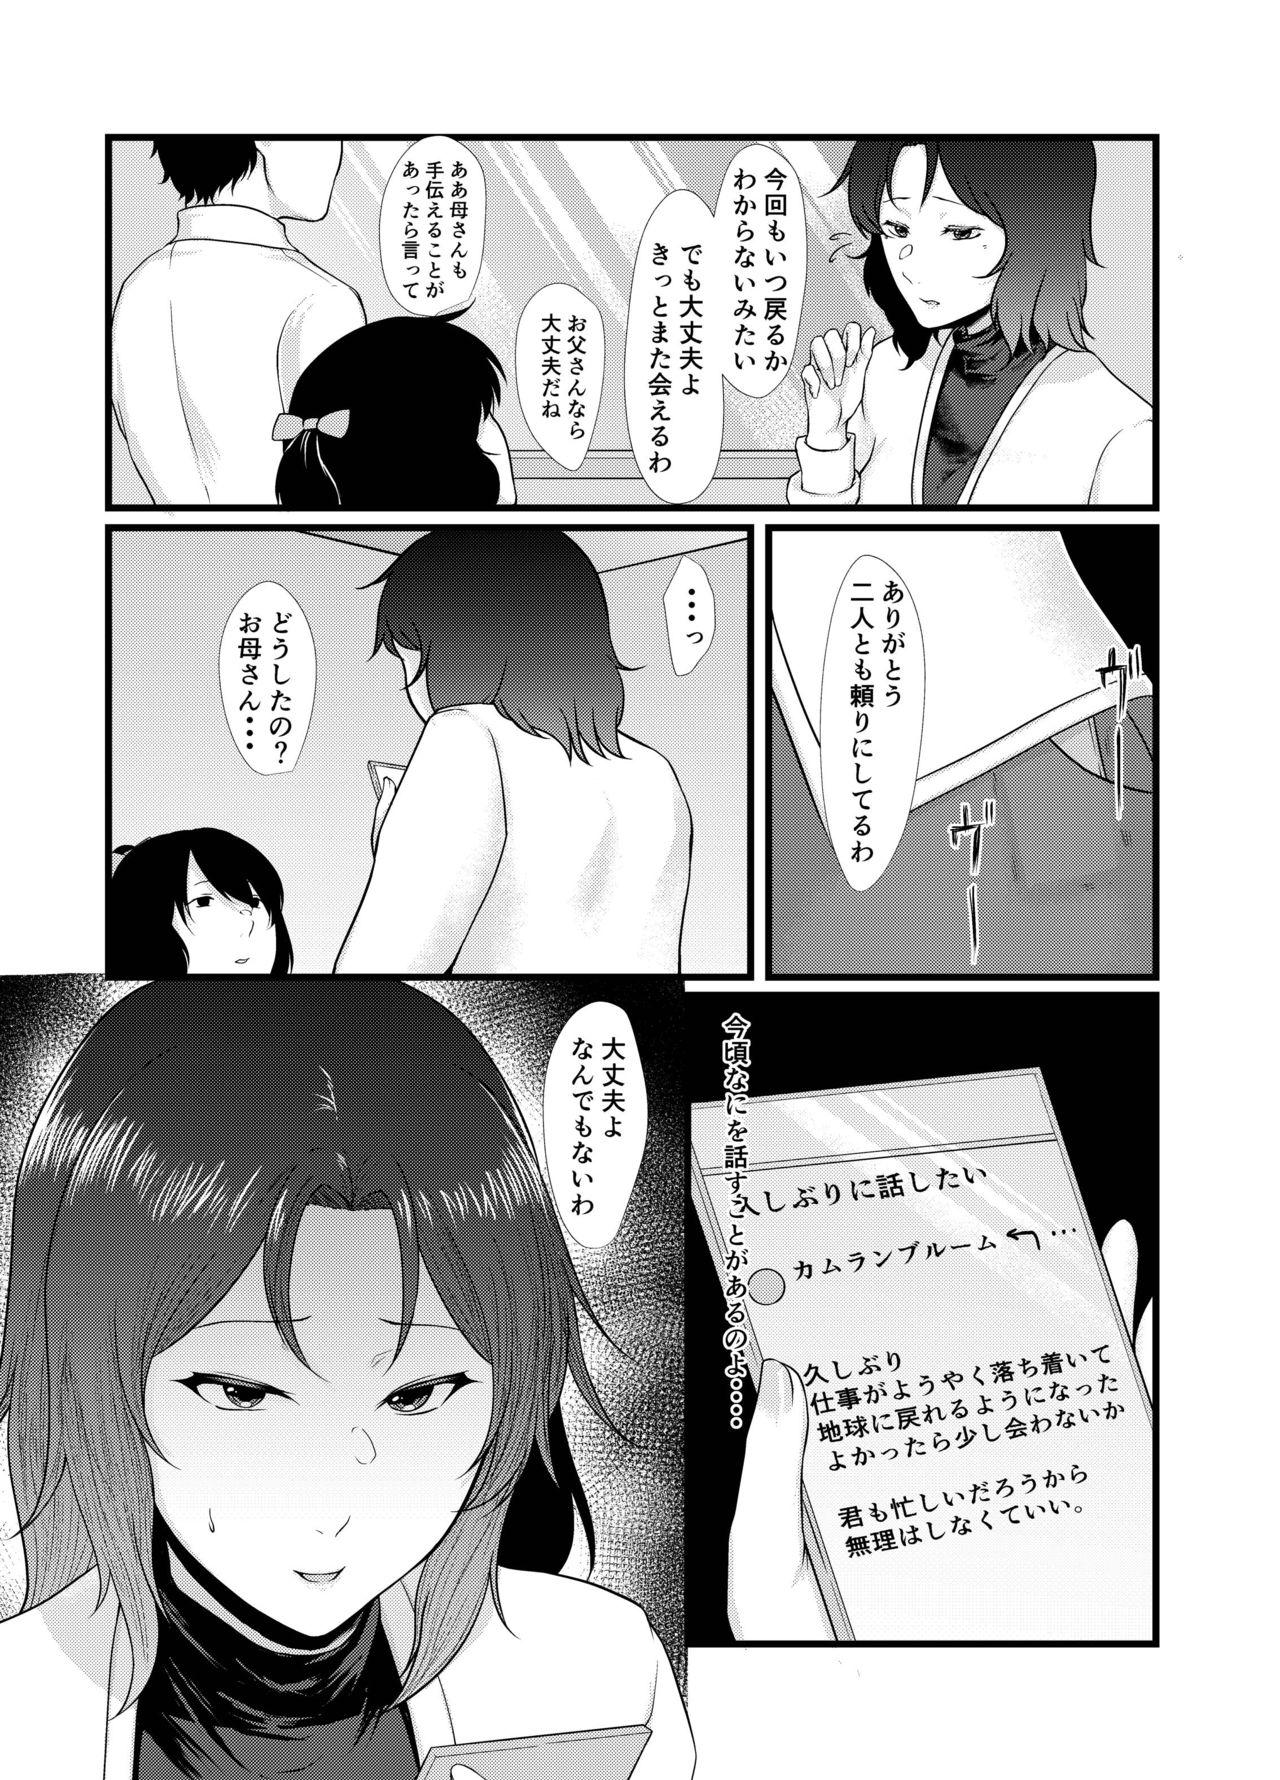 Affair Uchū no Anata wa Tōikara - Gundam Amatuer - Page 4